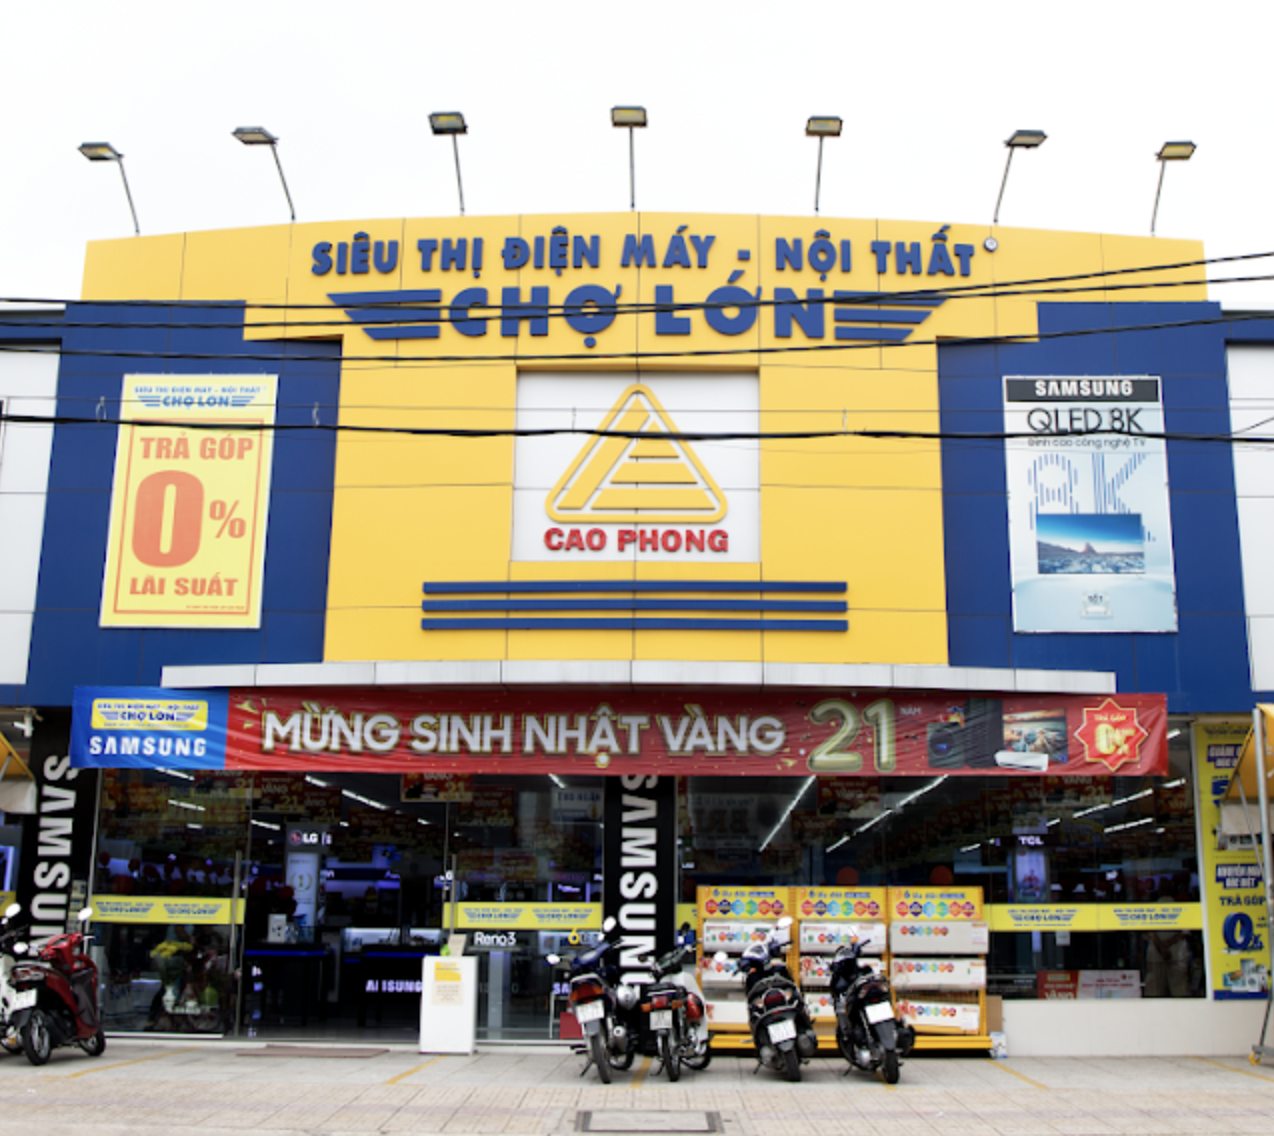 Quảng Nam: Phạt 105 triệu đồng chủ Siêu thị Điện máy nội thất Chợ Lớn do vi phạm PCCC